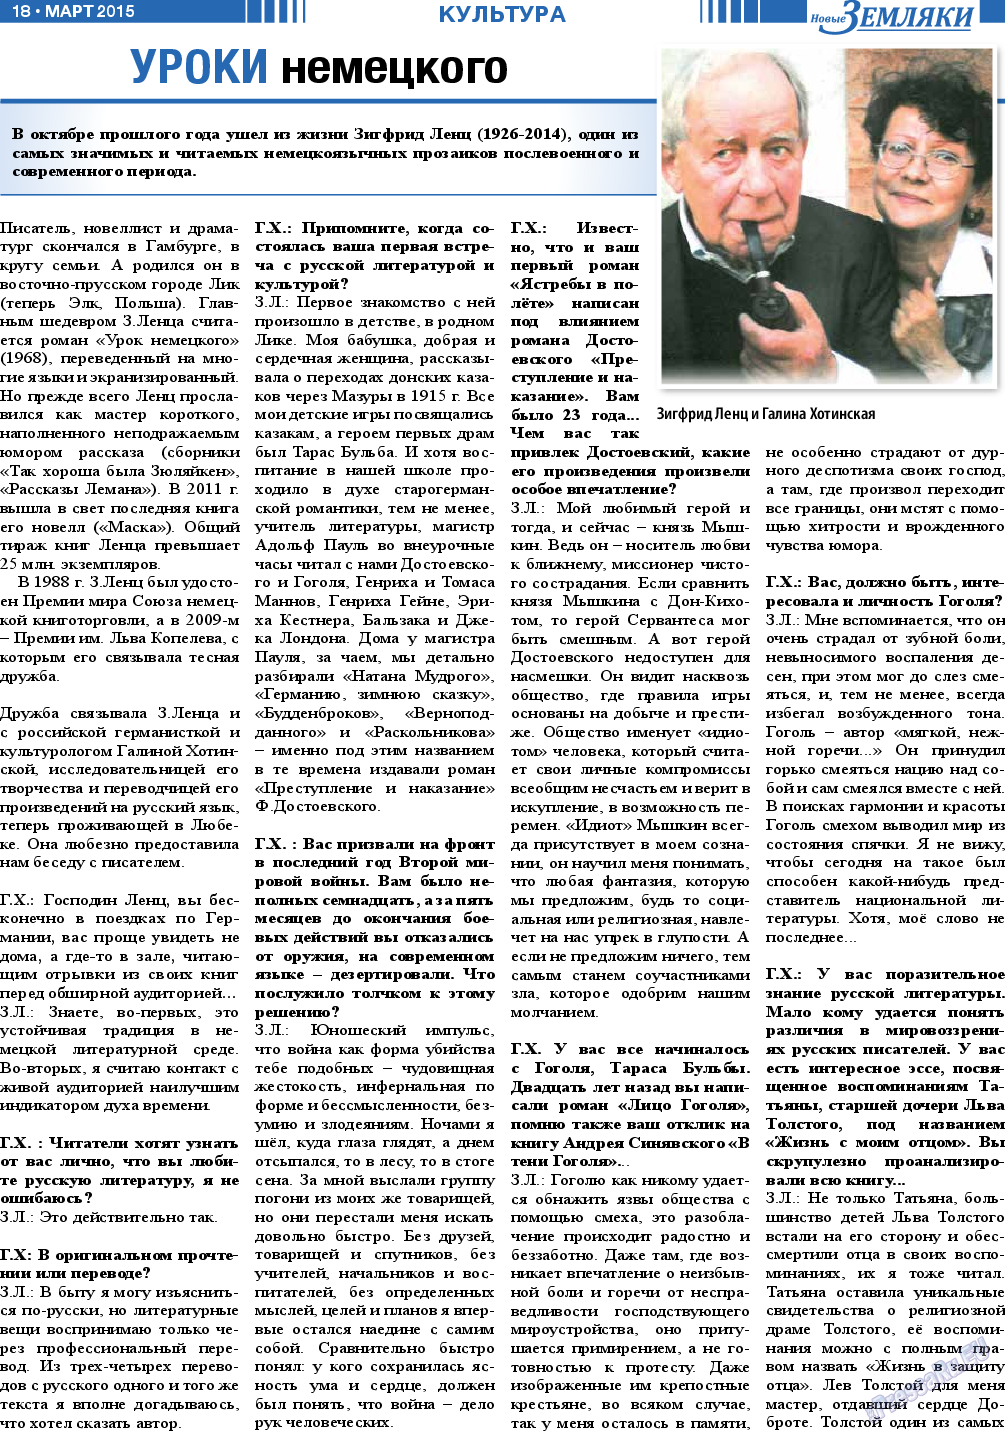 Новые Земляки, газета. 2015 №3 стр.18